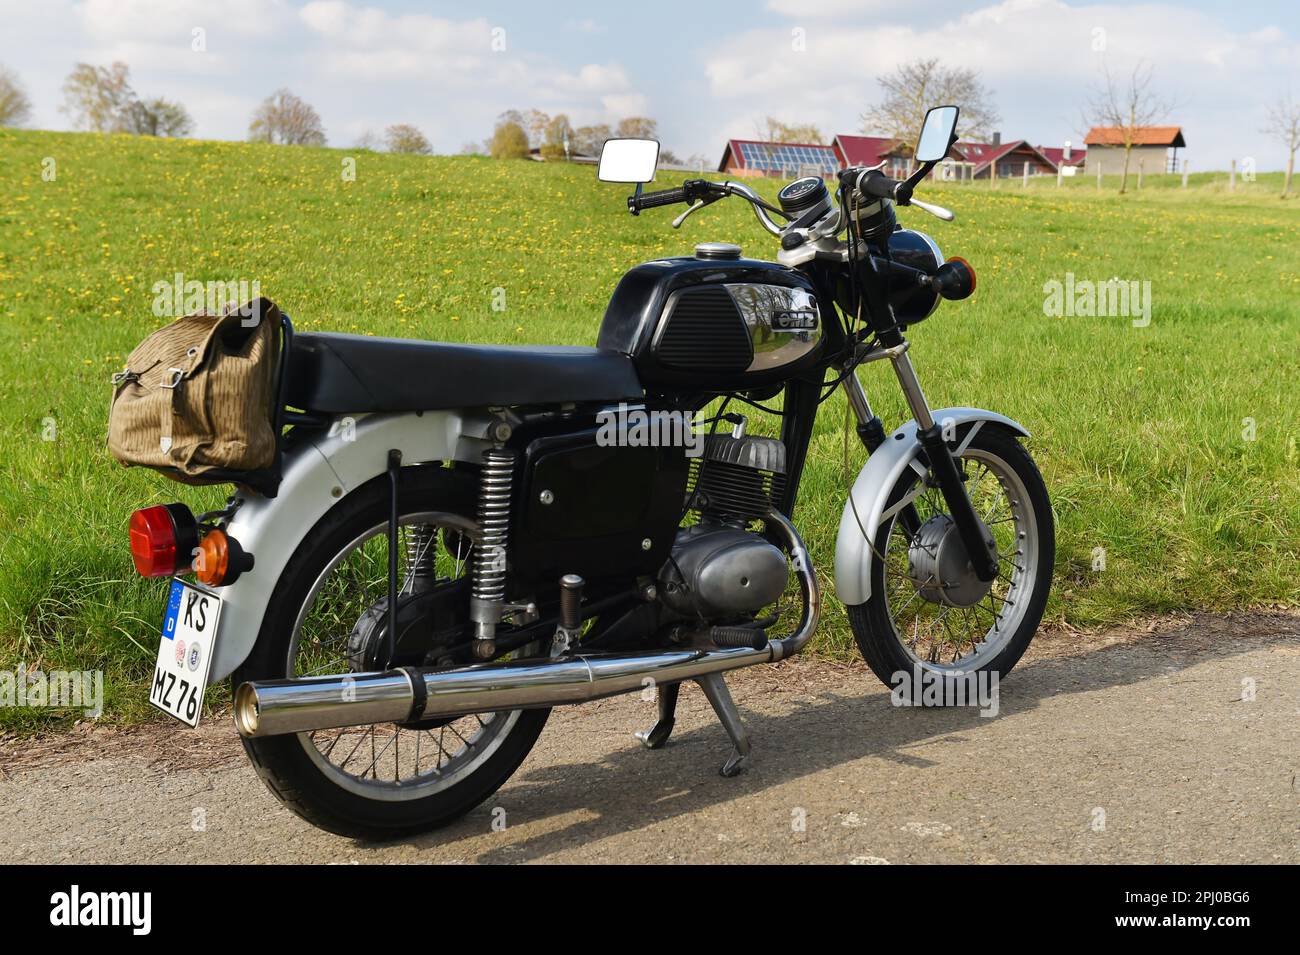 Oldtimer, DDR Motorrad MZ TS 125, 150, aus Zschopau, Sachsen, Deutschland  Stockfotografie - Alamy